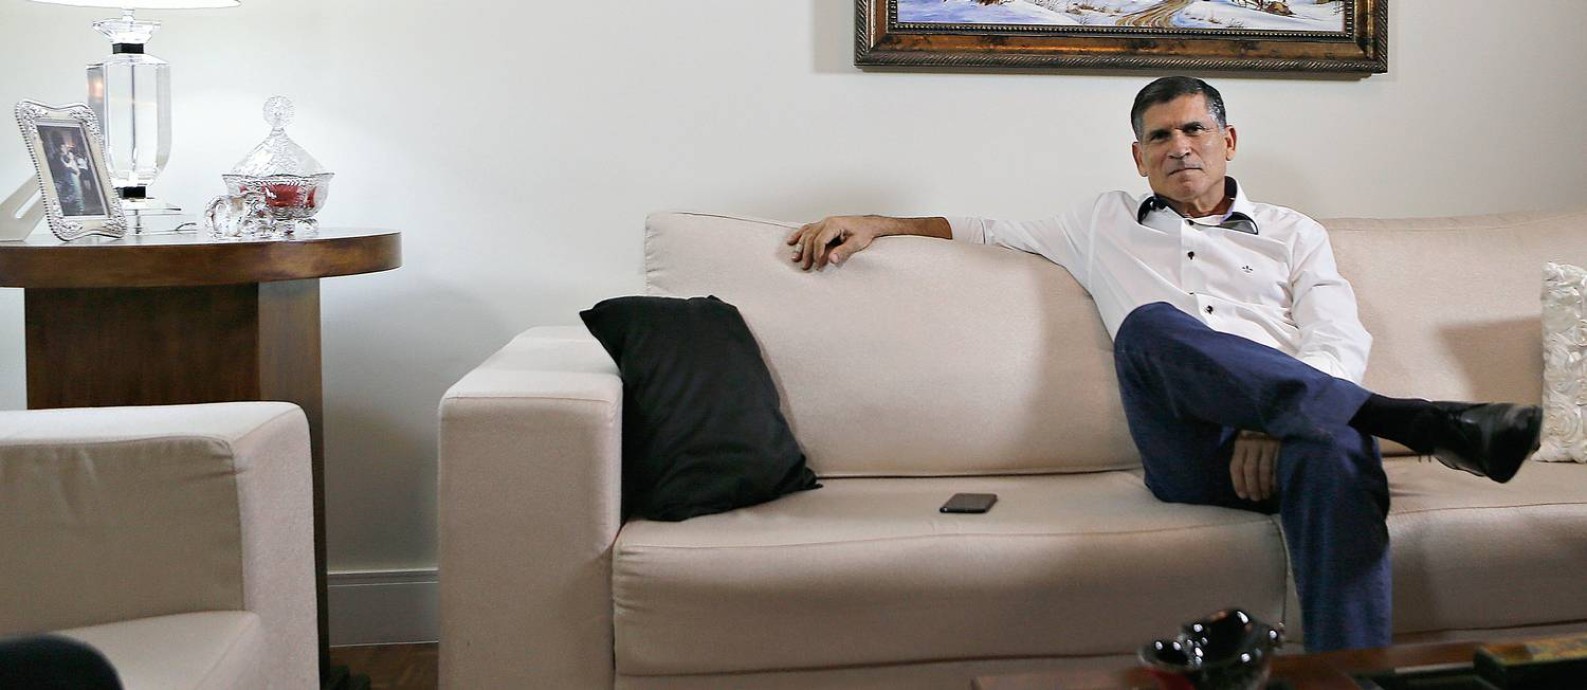 O general Santos Cruz em sua casa em Brasília na terça-feira 18. “Não vou apontar o dedo para ninguém”. Foto: Jorge William / Agência O Globo